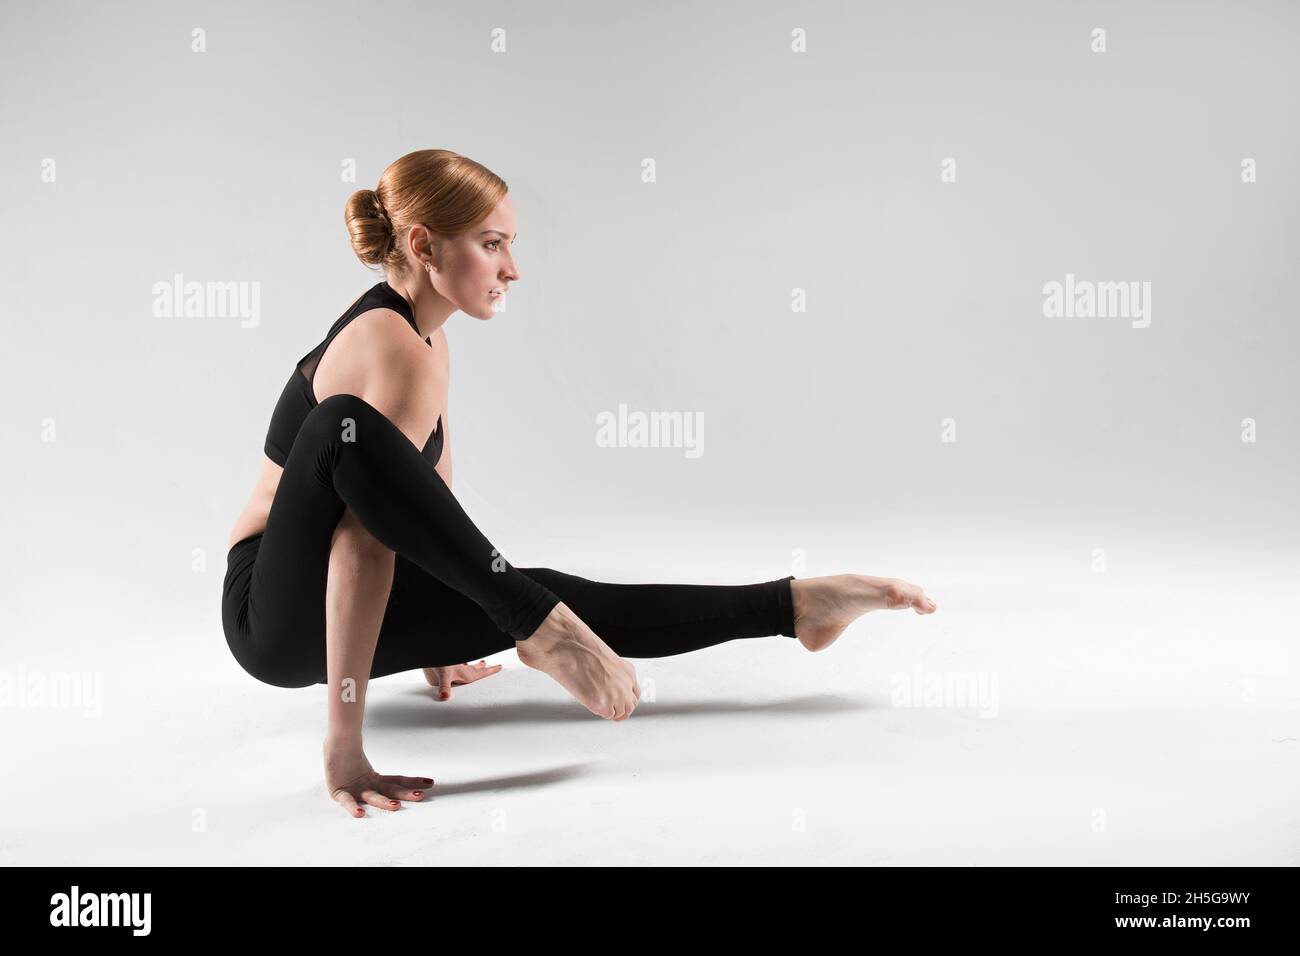 Un entraîneur professionnel de yoga et de pilates montre des exercices de yoga, pilates, stretching et d'autres types de forme physique sur un tapis avec l'équipement, avec des fitnes Banque D'Images